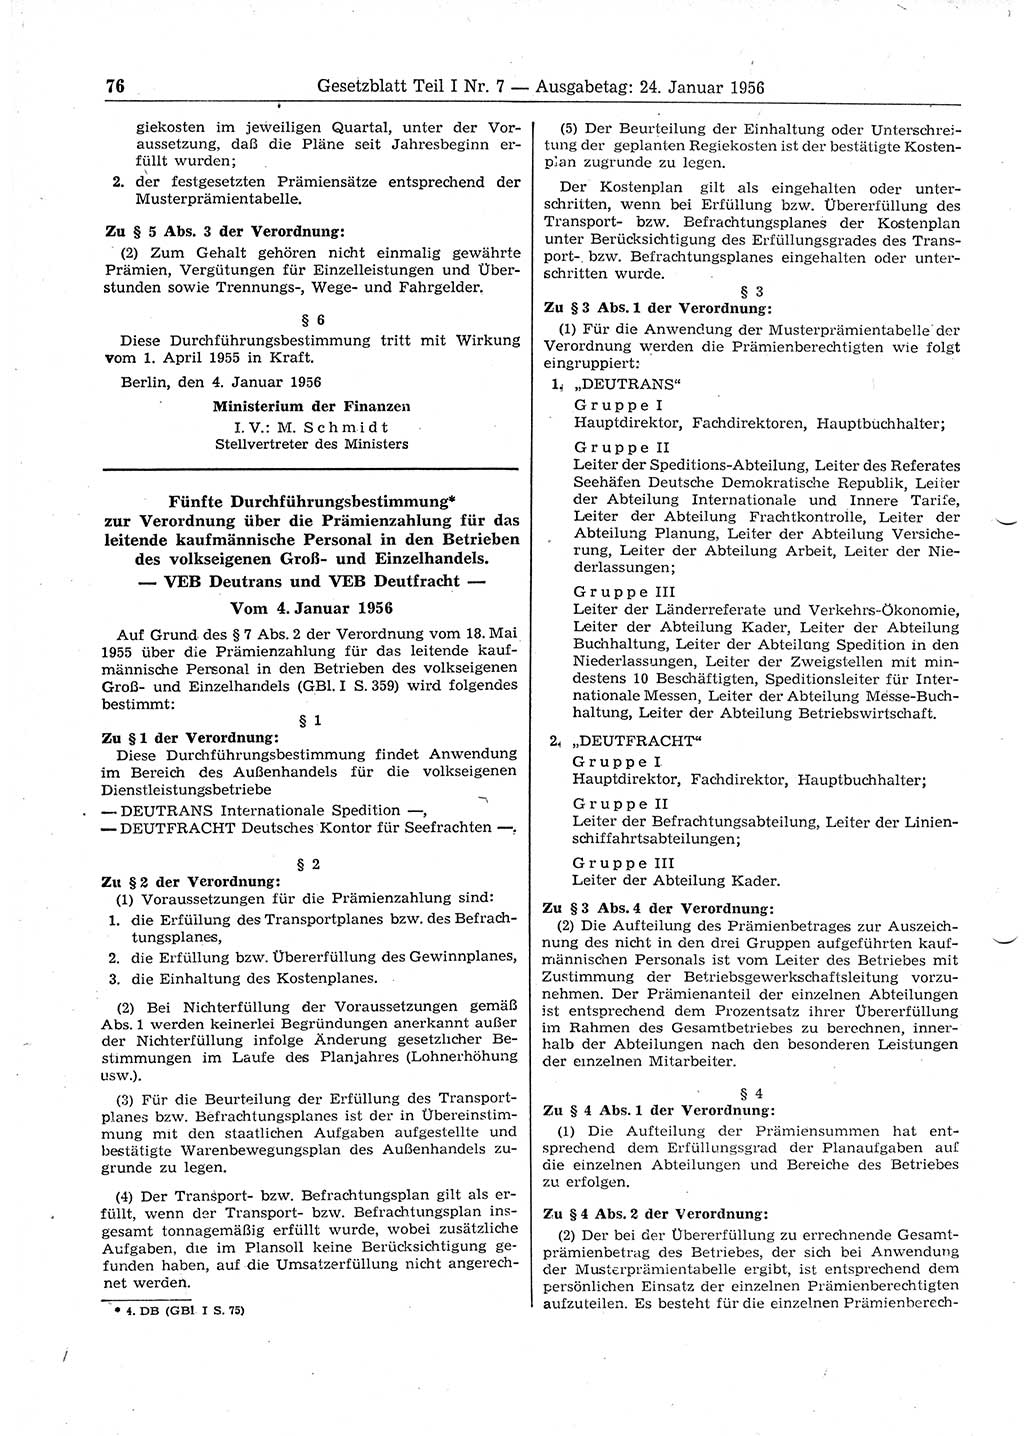 Gesetzblatt (GBl.) der Deutschen Demokratischen Republik (DDR) Teil Ⅰ 1956, Seite 76 (GBl. DDR Ⅰ 1956, S. 76)